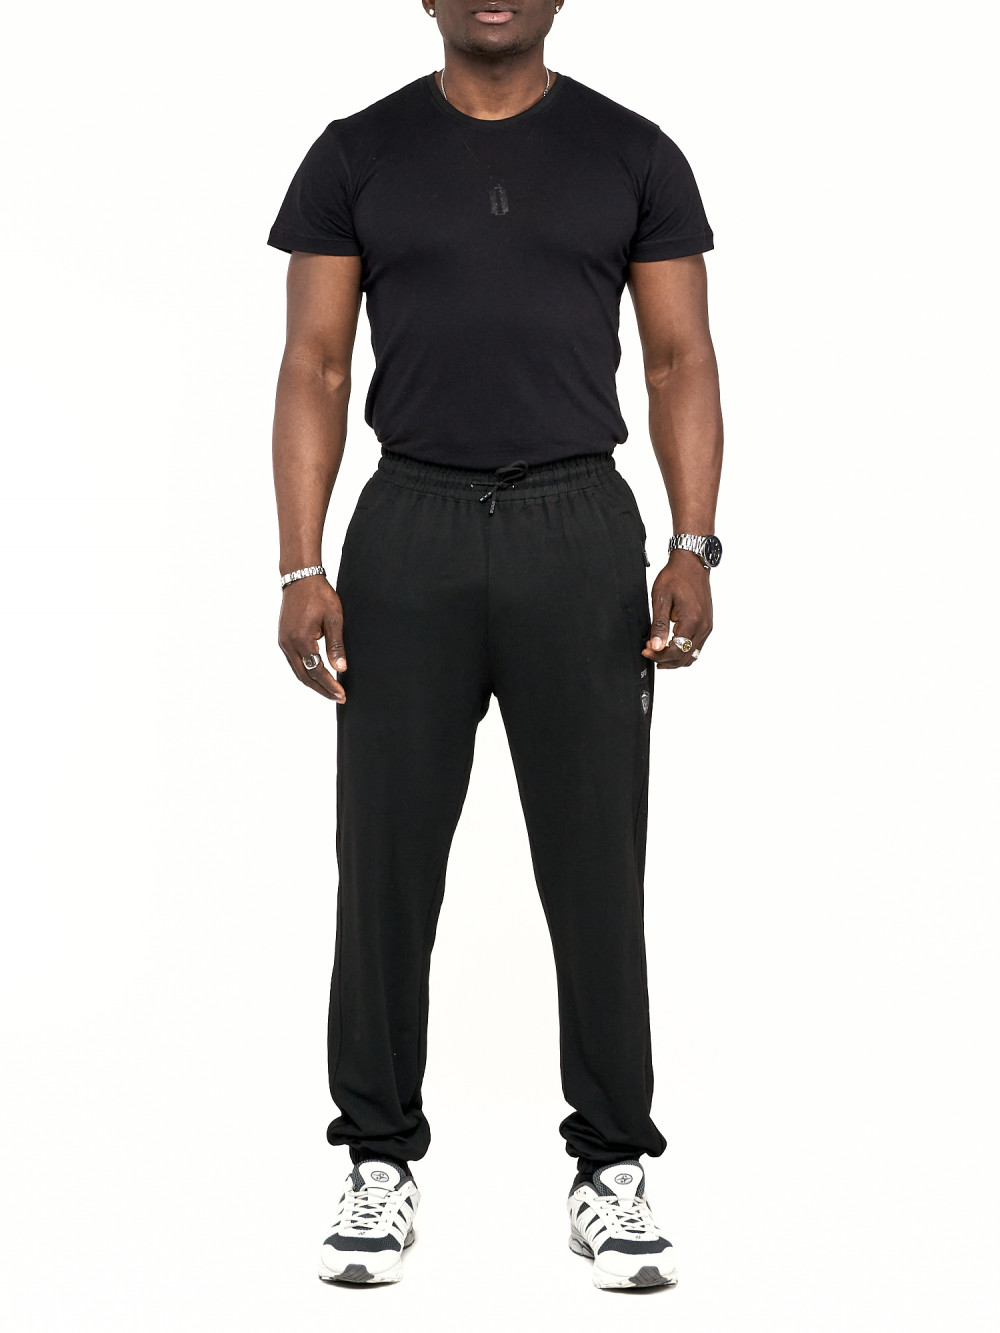 Спортивные брюки мужские NoBrand AD006 черные 54 RU